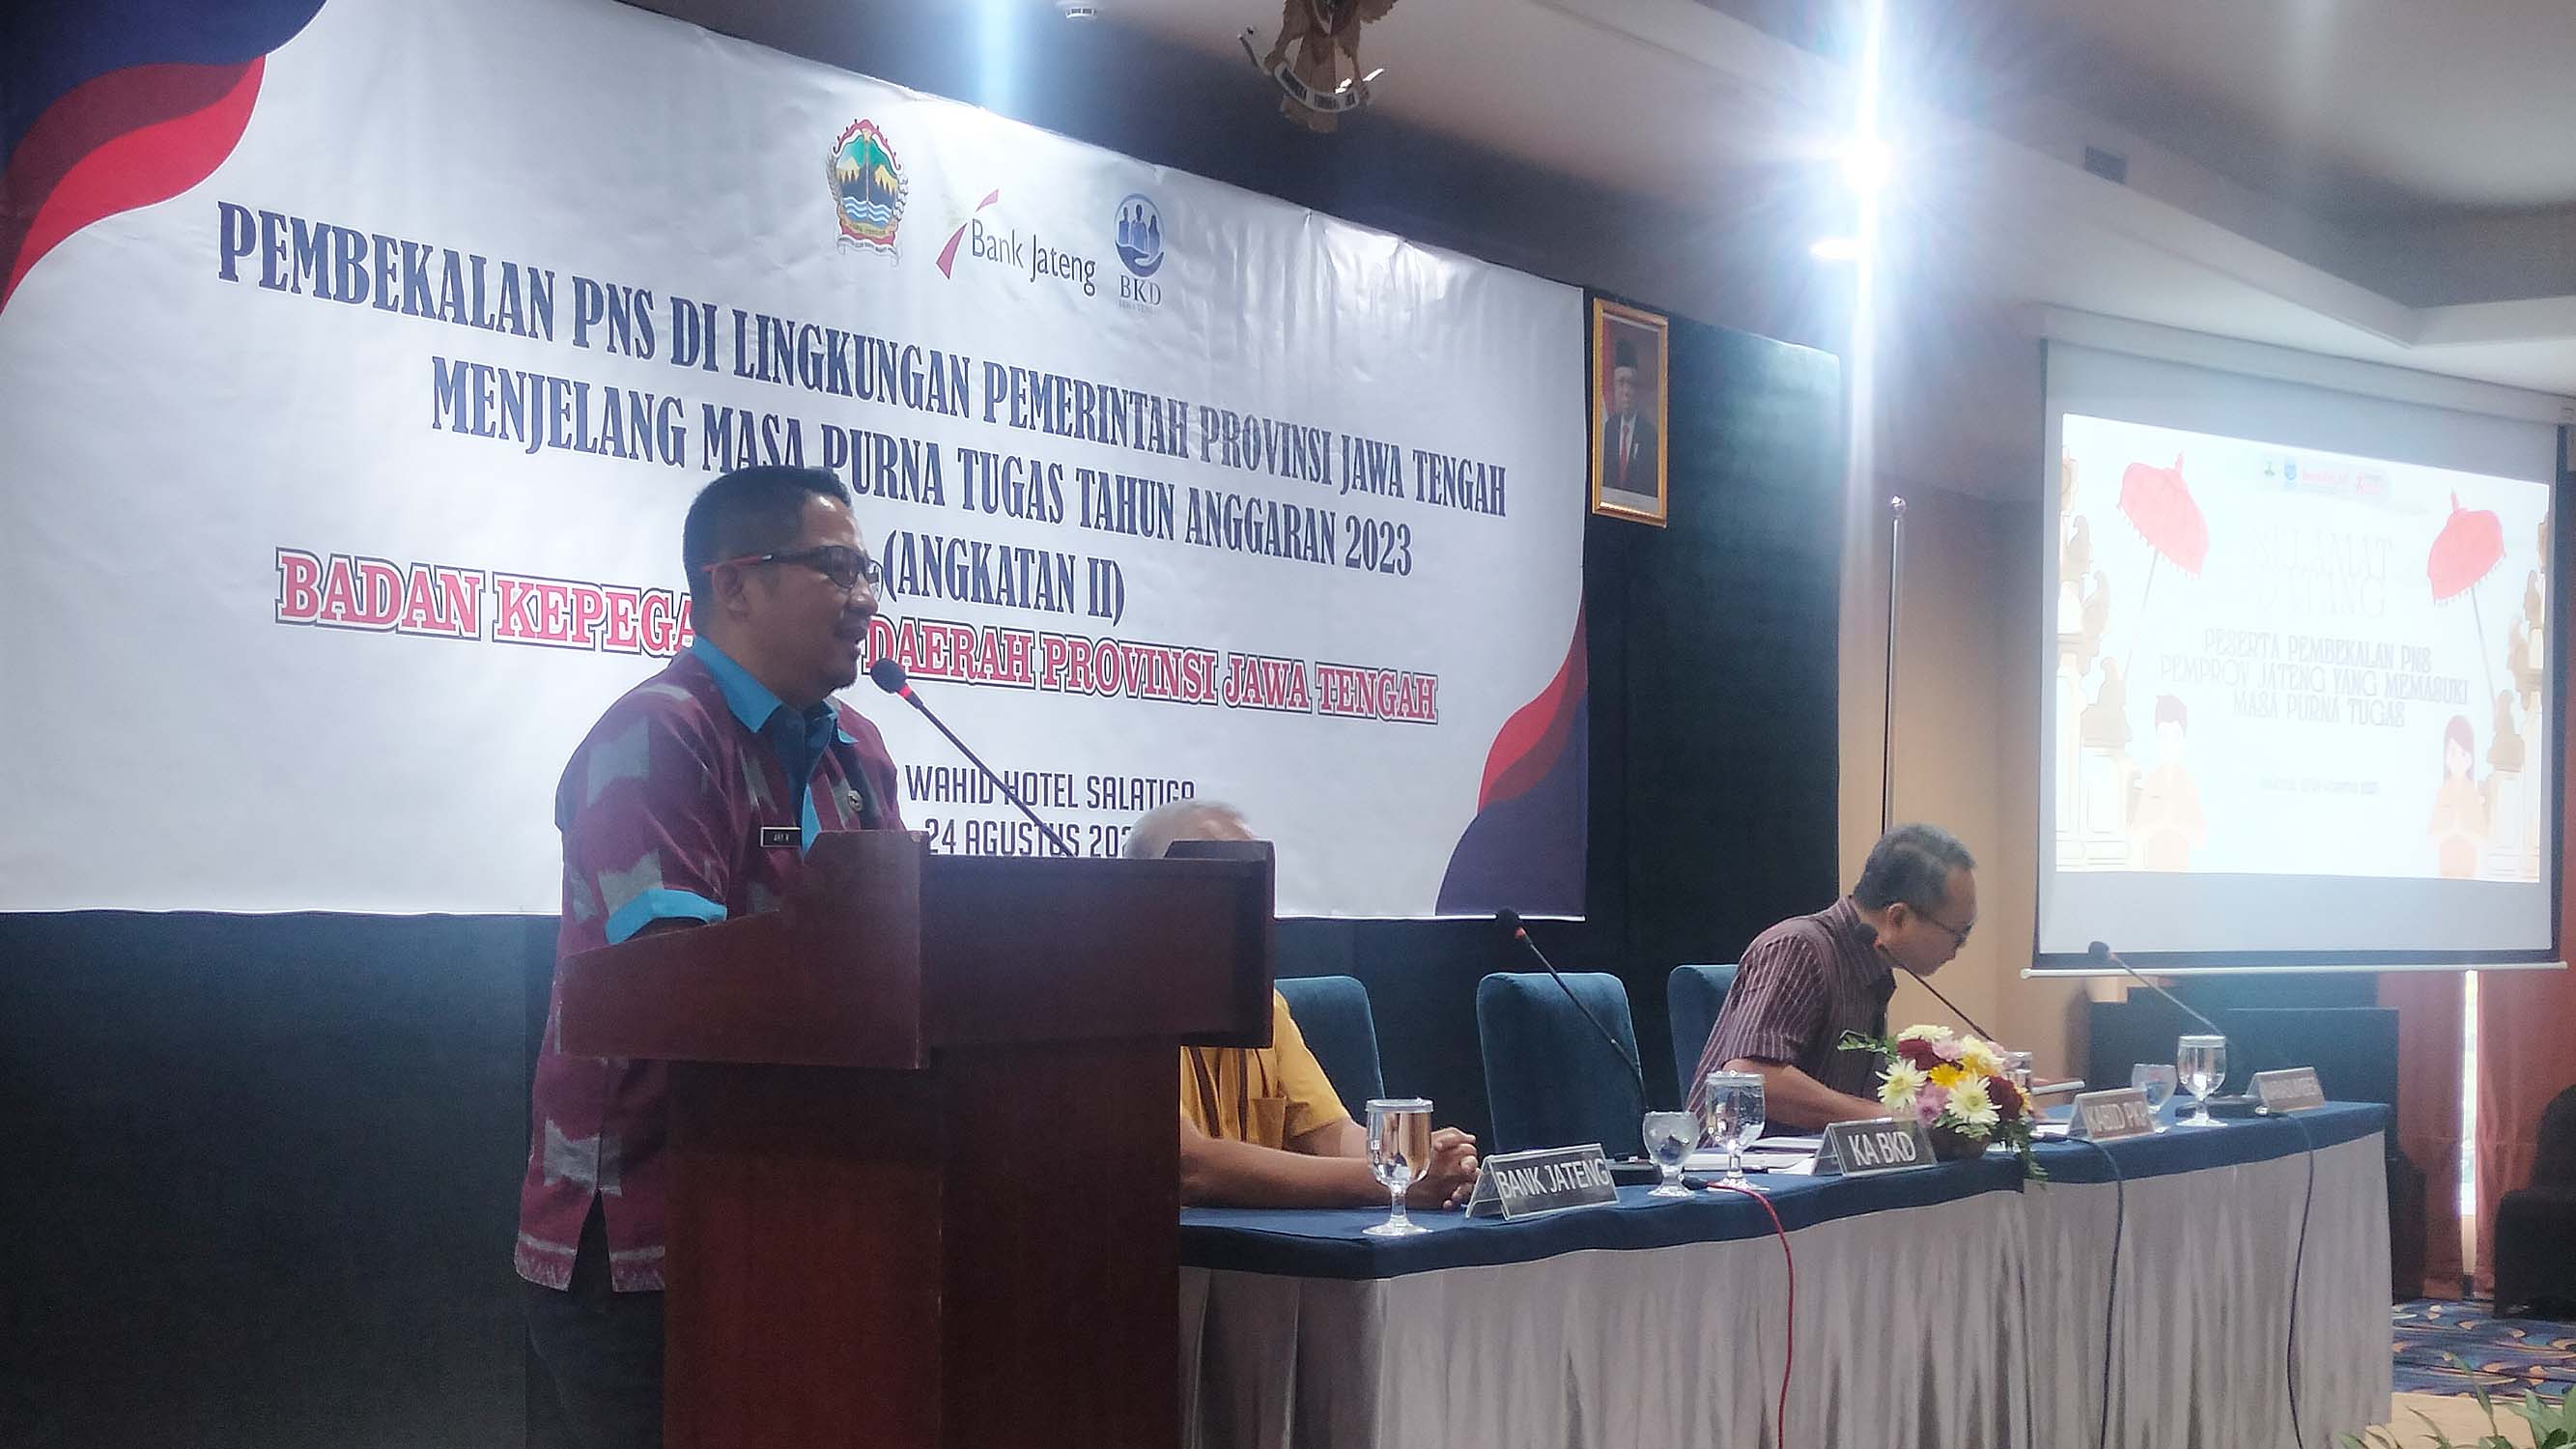  Pembekalan bagi PNS Pemerintah Provinsi Jawa Tengah yang akan Purna Tugas Tahun 2023